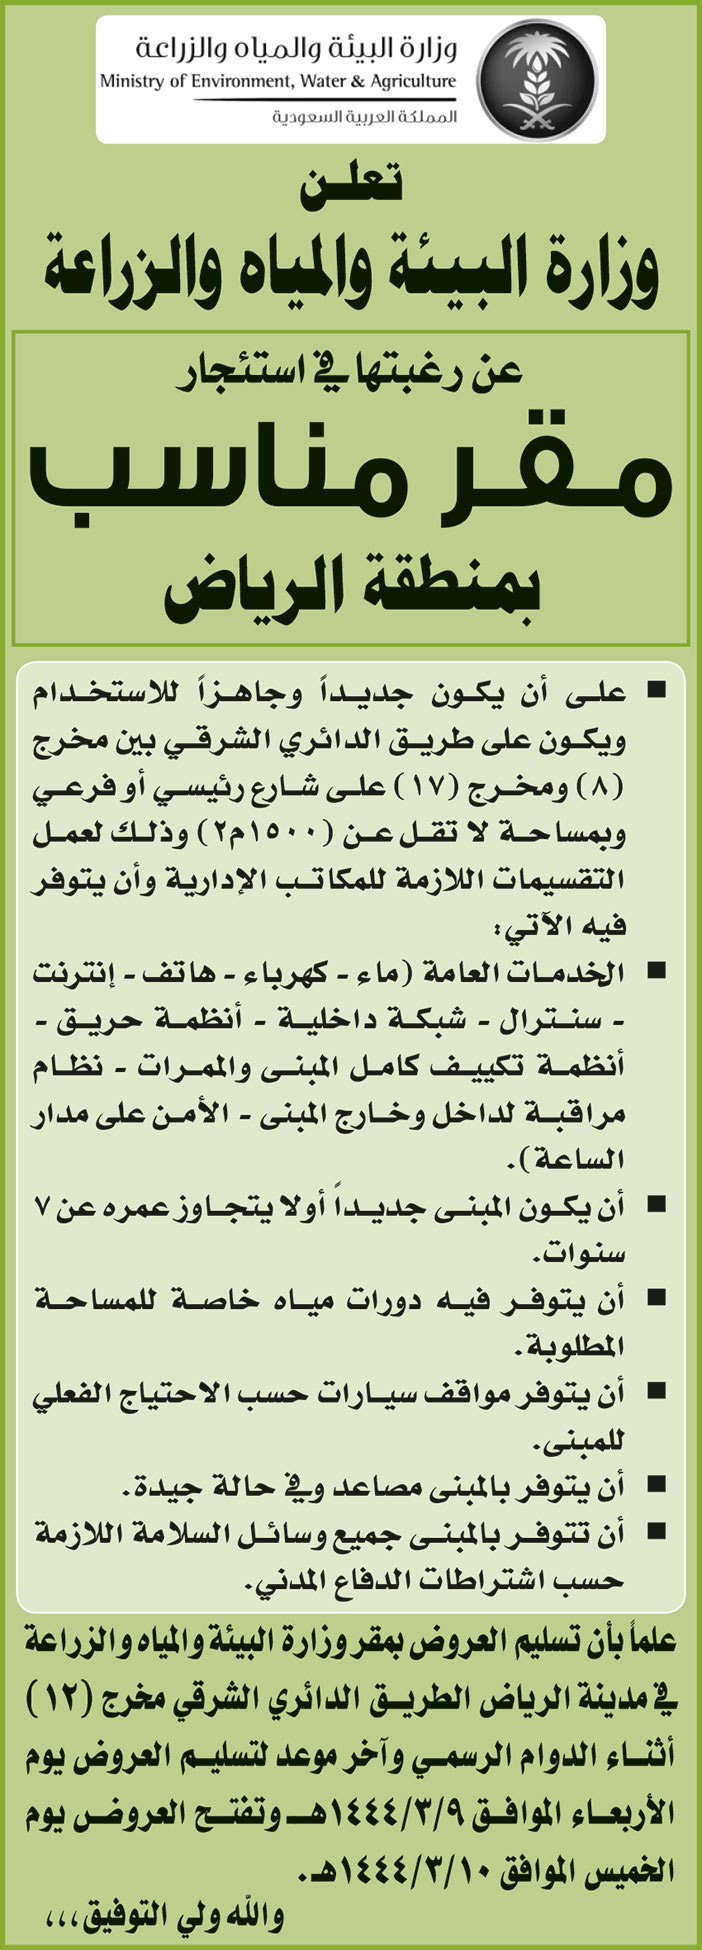 إعلان وزارة البيئة والمياه والزراعة استئجار مقر مناسب بمنطقة الرياض 